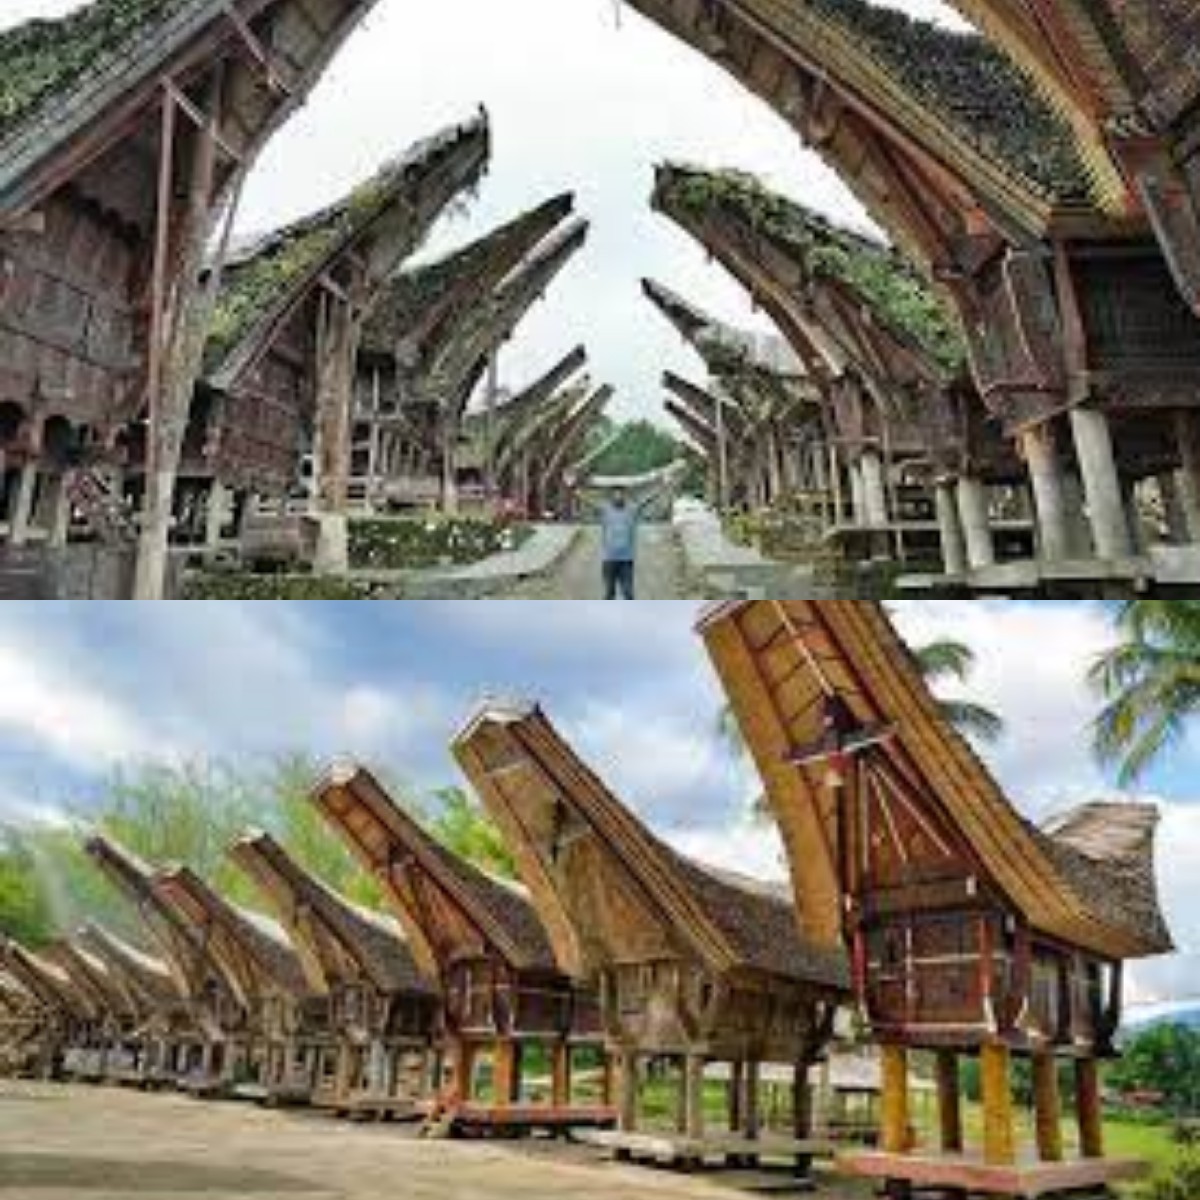 Mengulik Sejarah Kebudayaan, Fakta Menarik Hingga Wisata yang Ada di Tana Toraja 